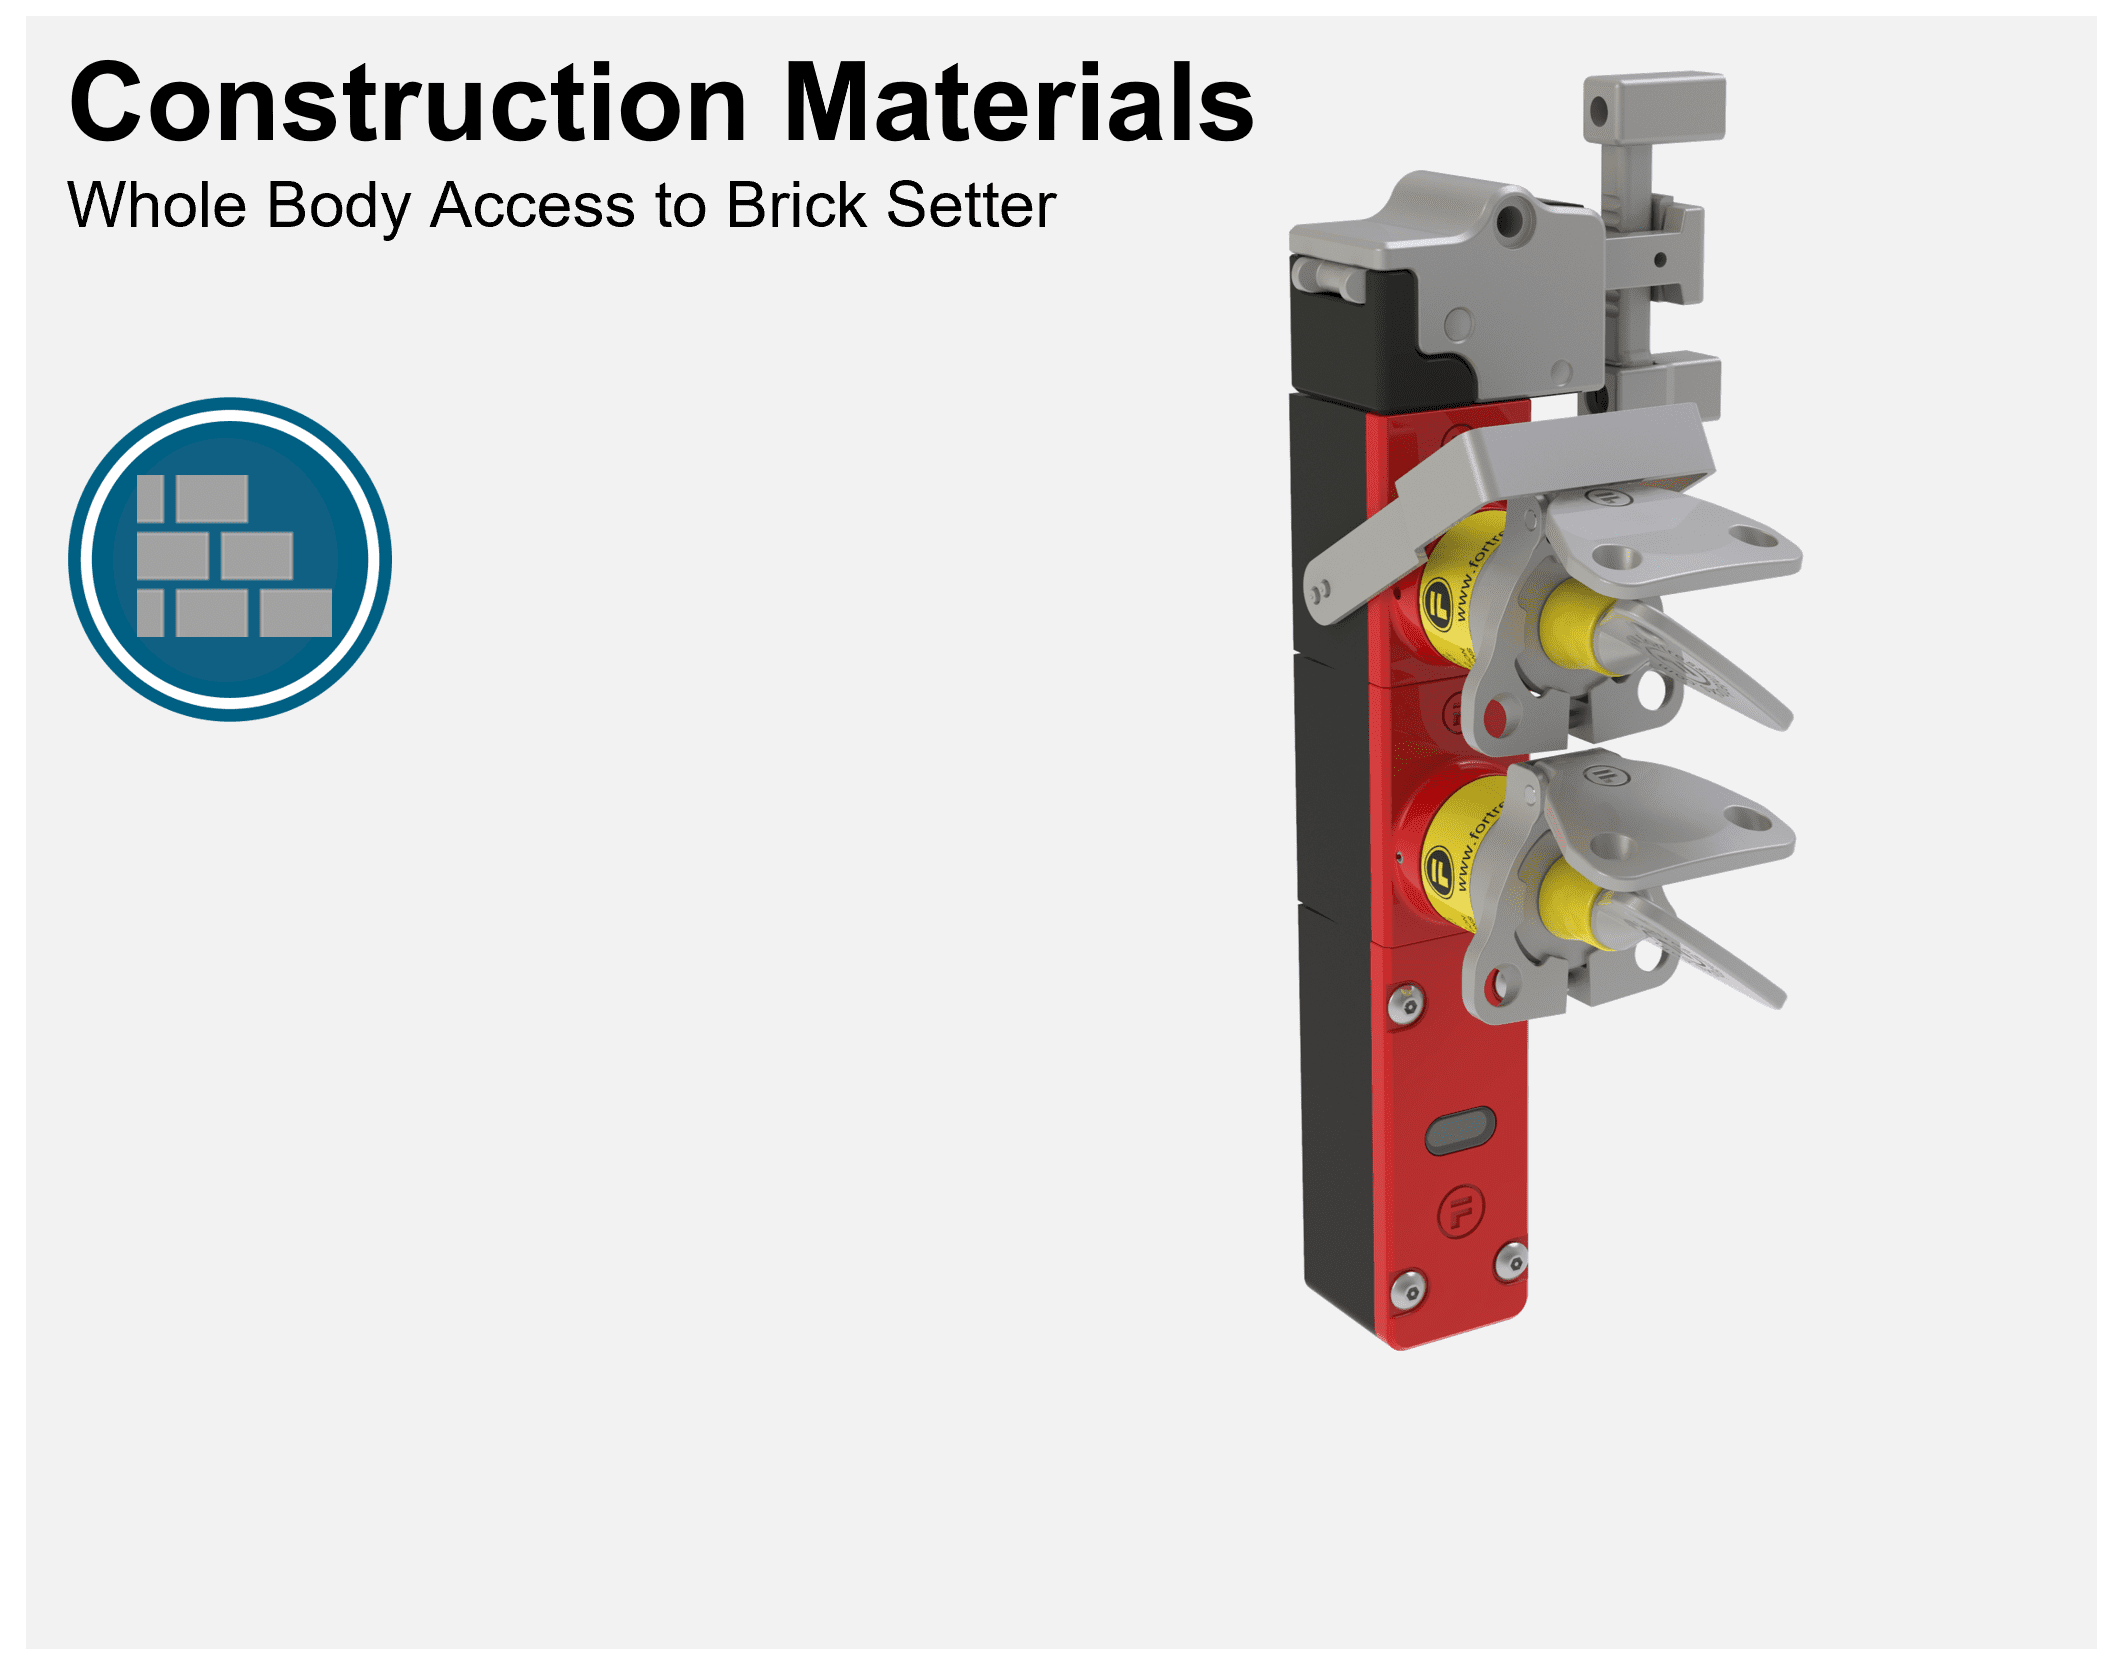 Materiales de construcción - Acceso instantáneo a una instalación de ladrillos